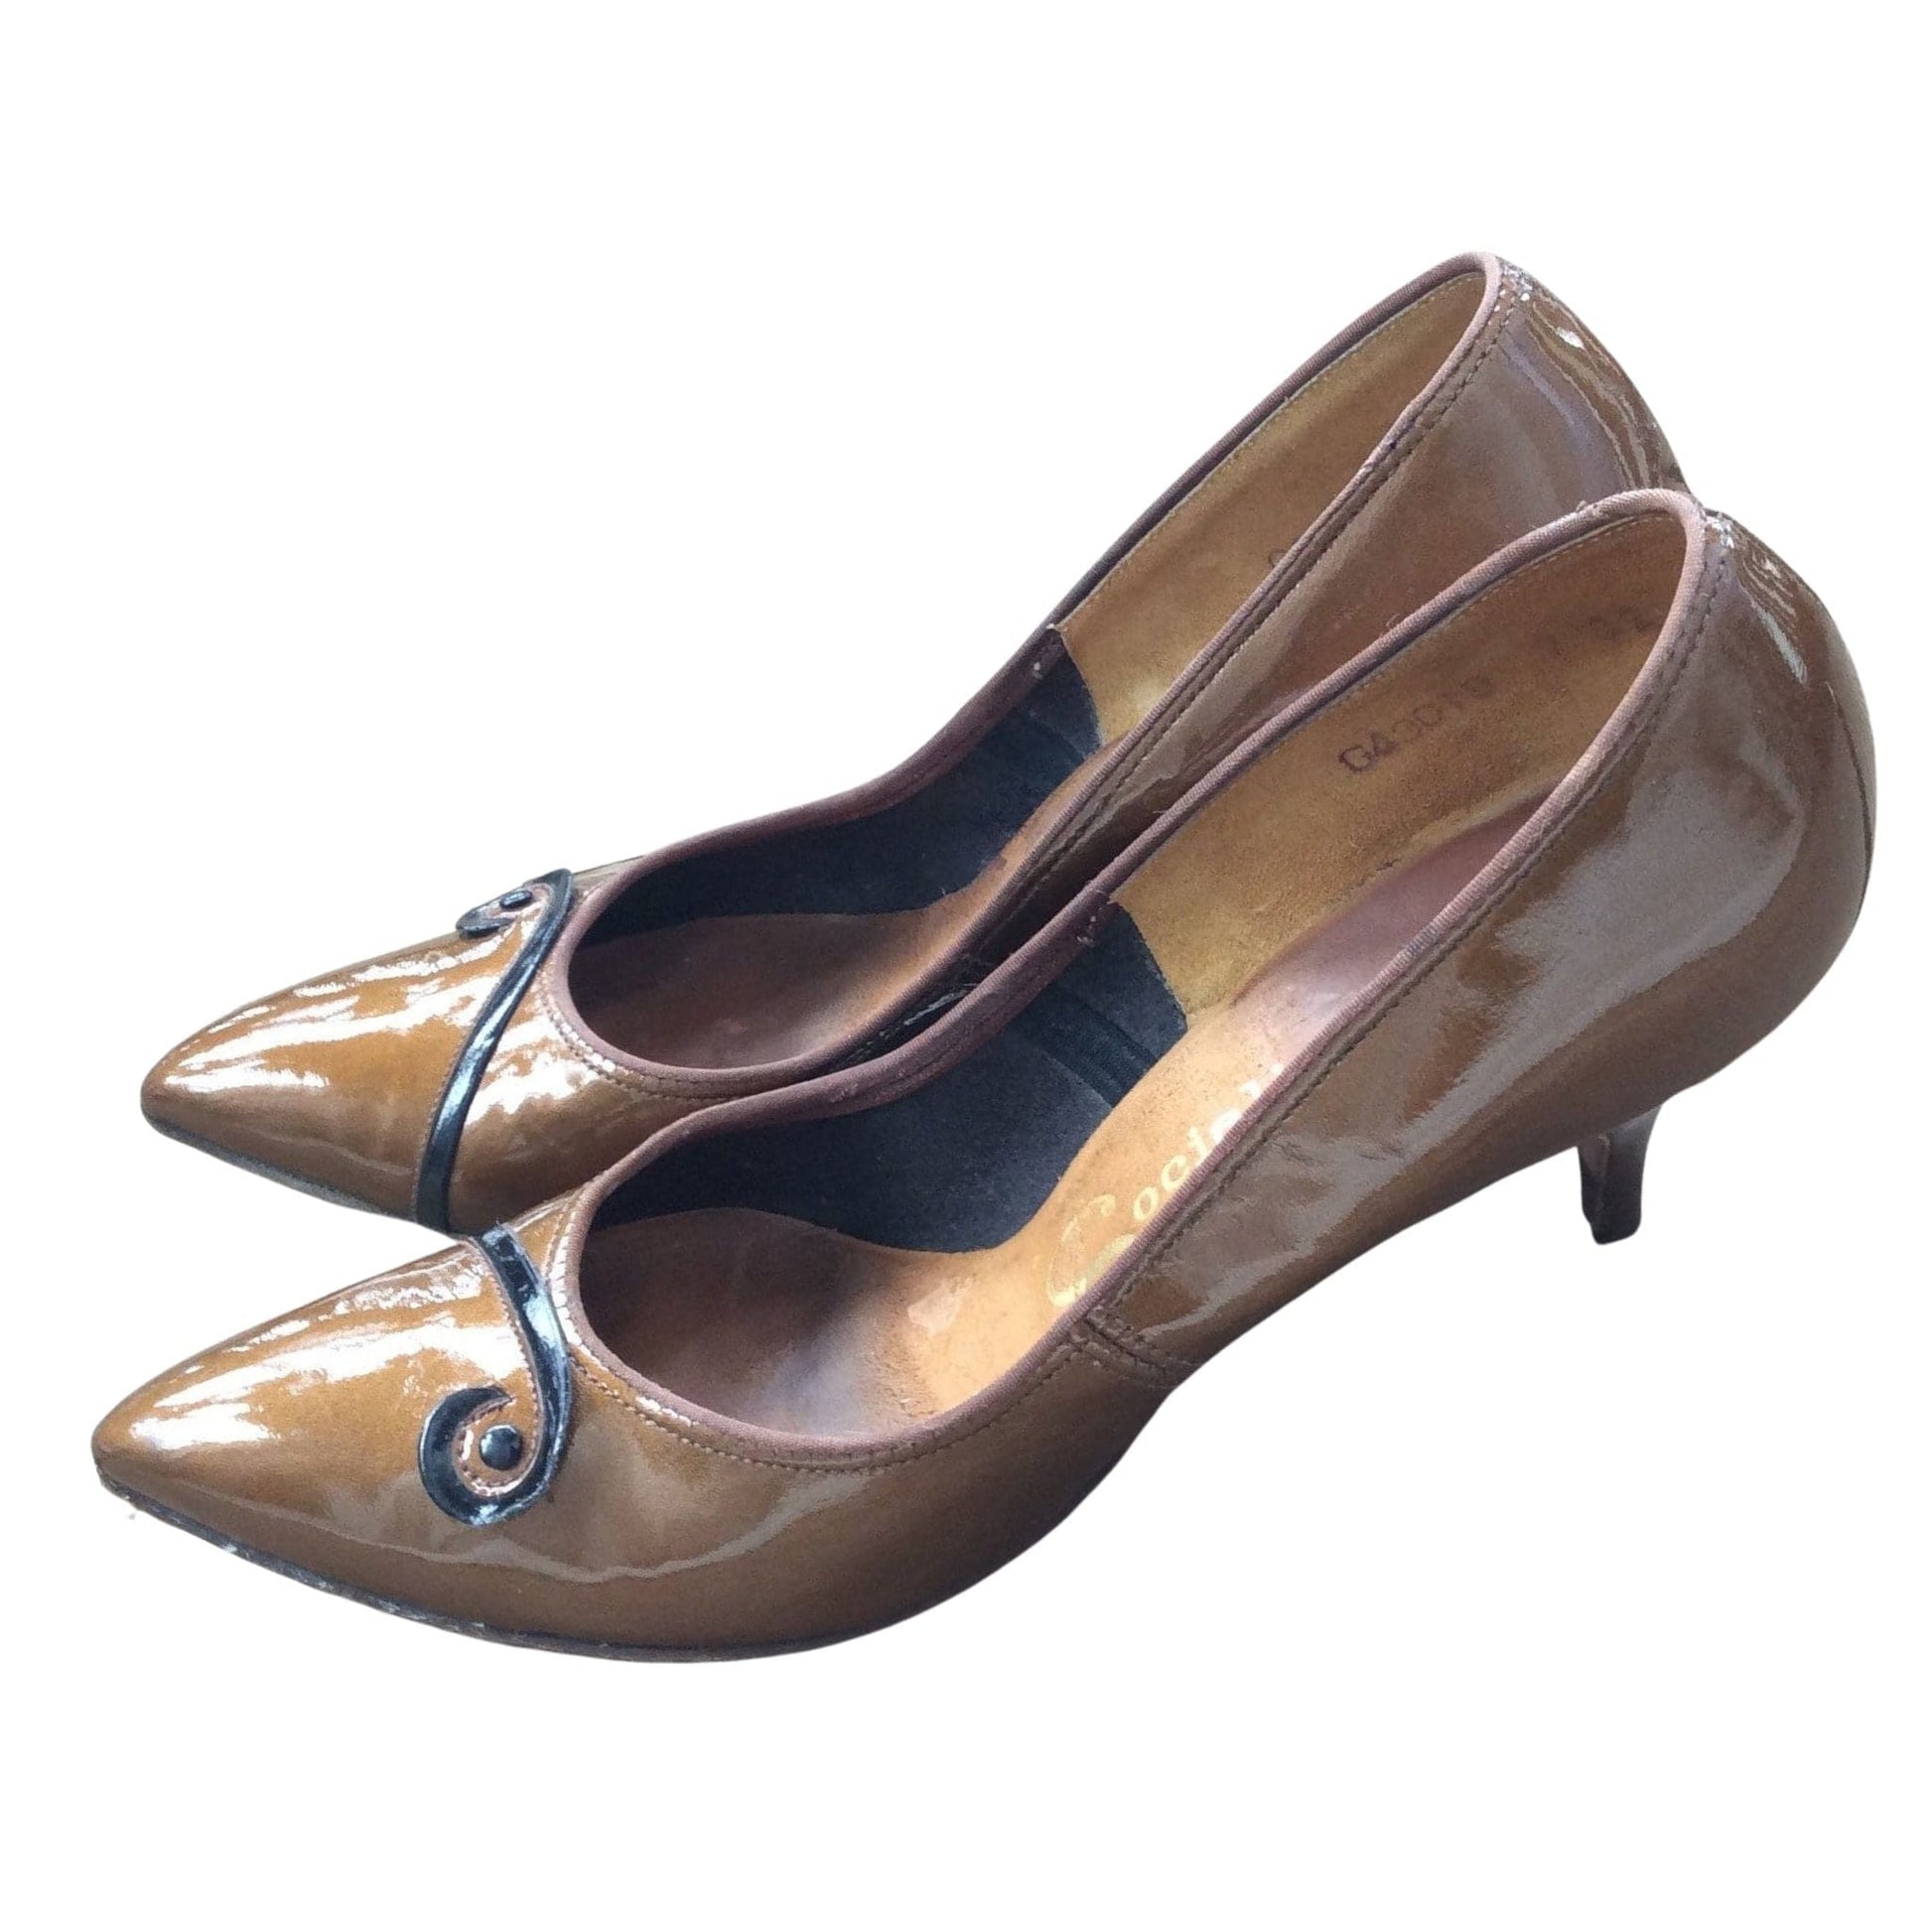 Brown Pin-up Heels 6.5 / Bronze / Vintage - 1950s